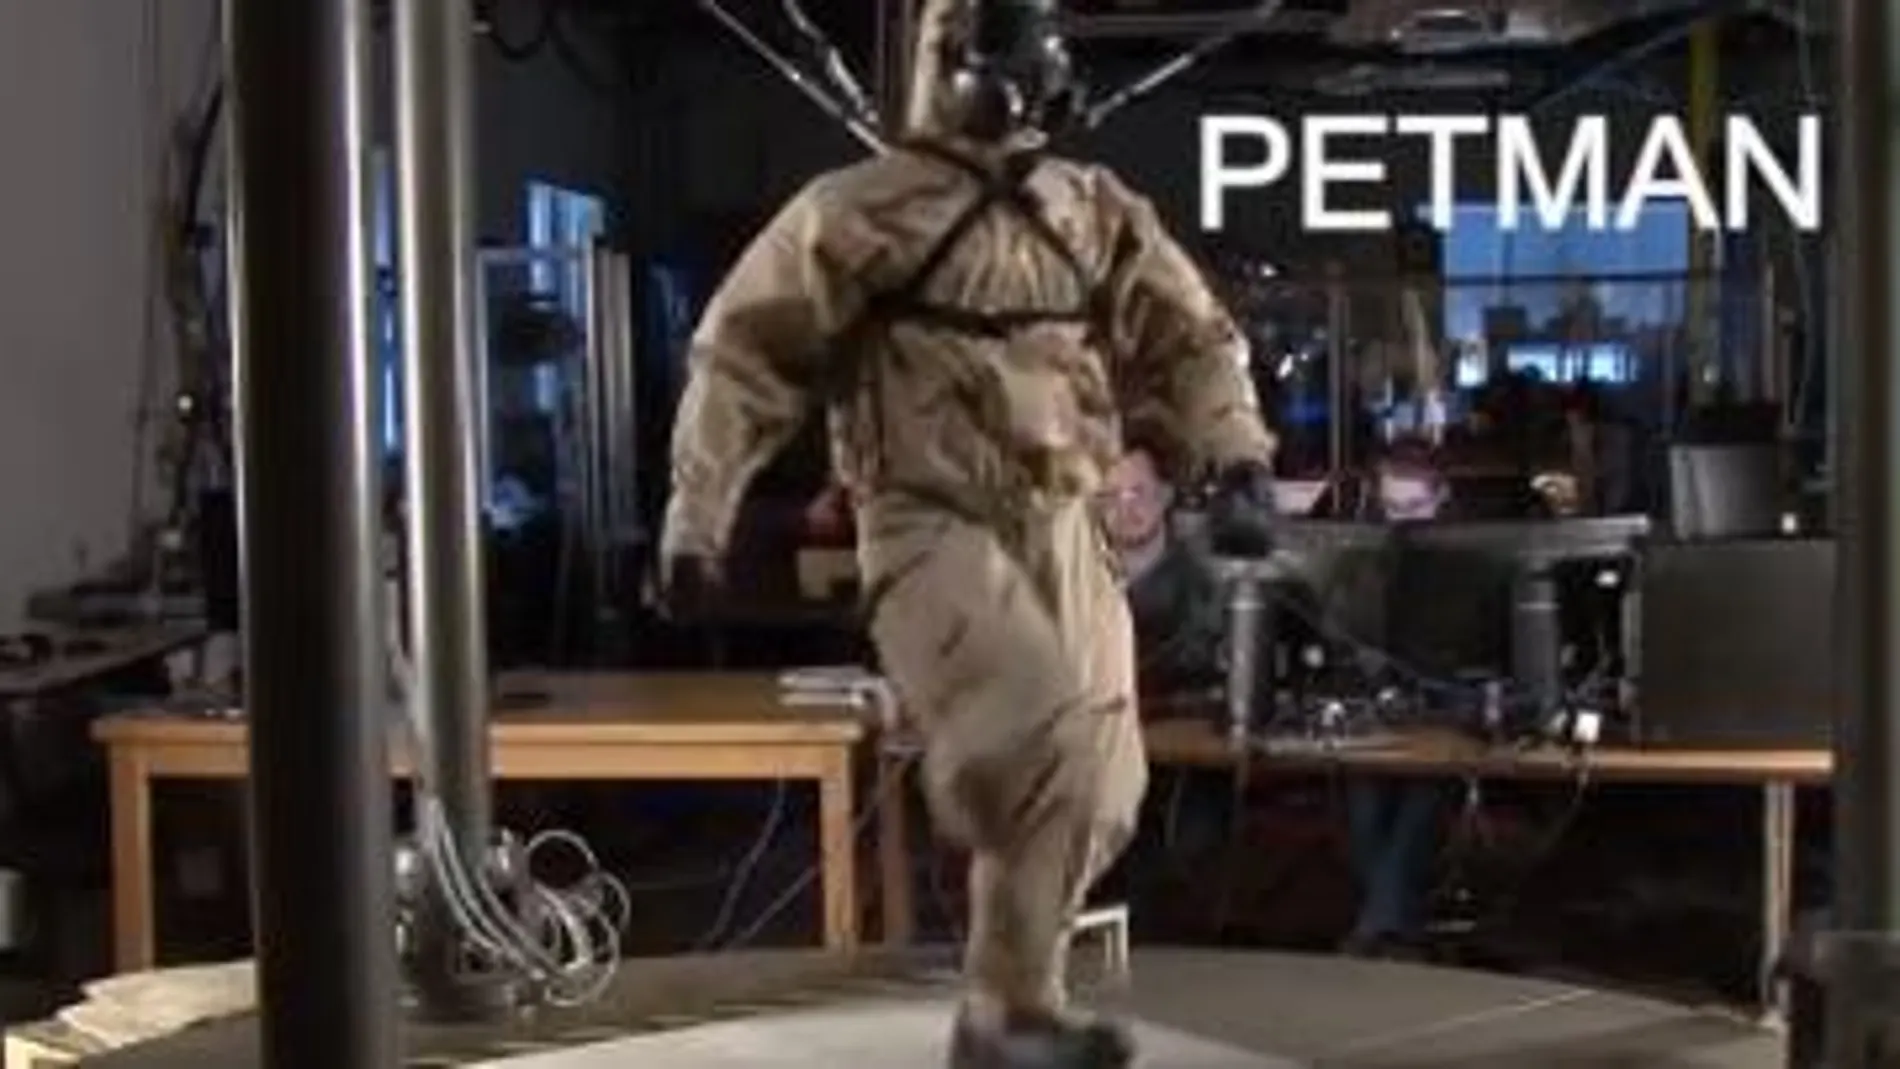 Petman: ¿Robot o humano?